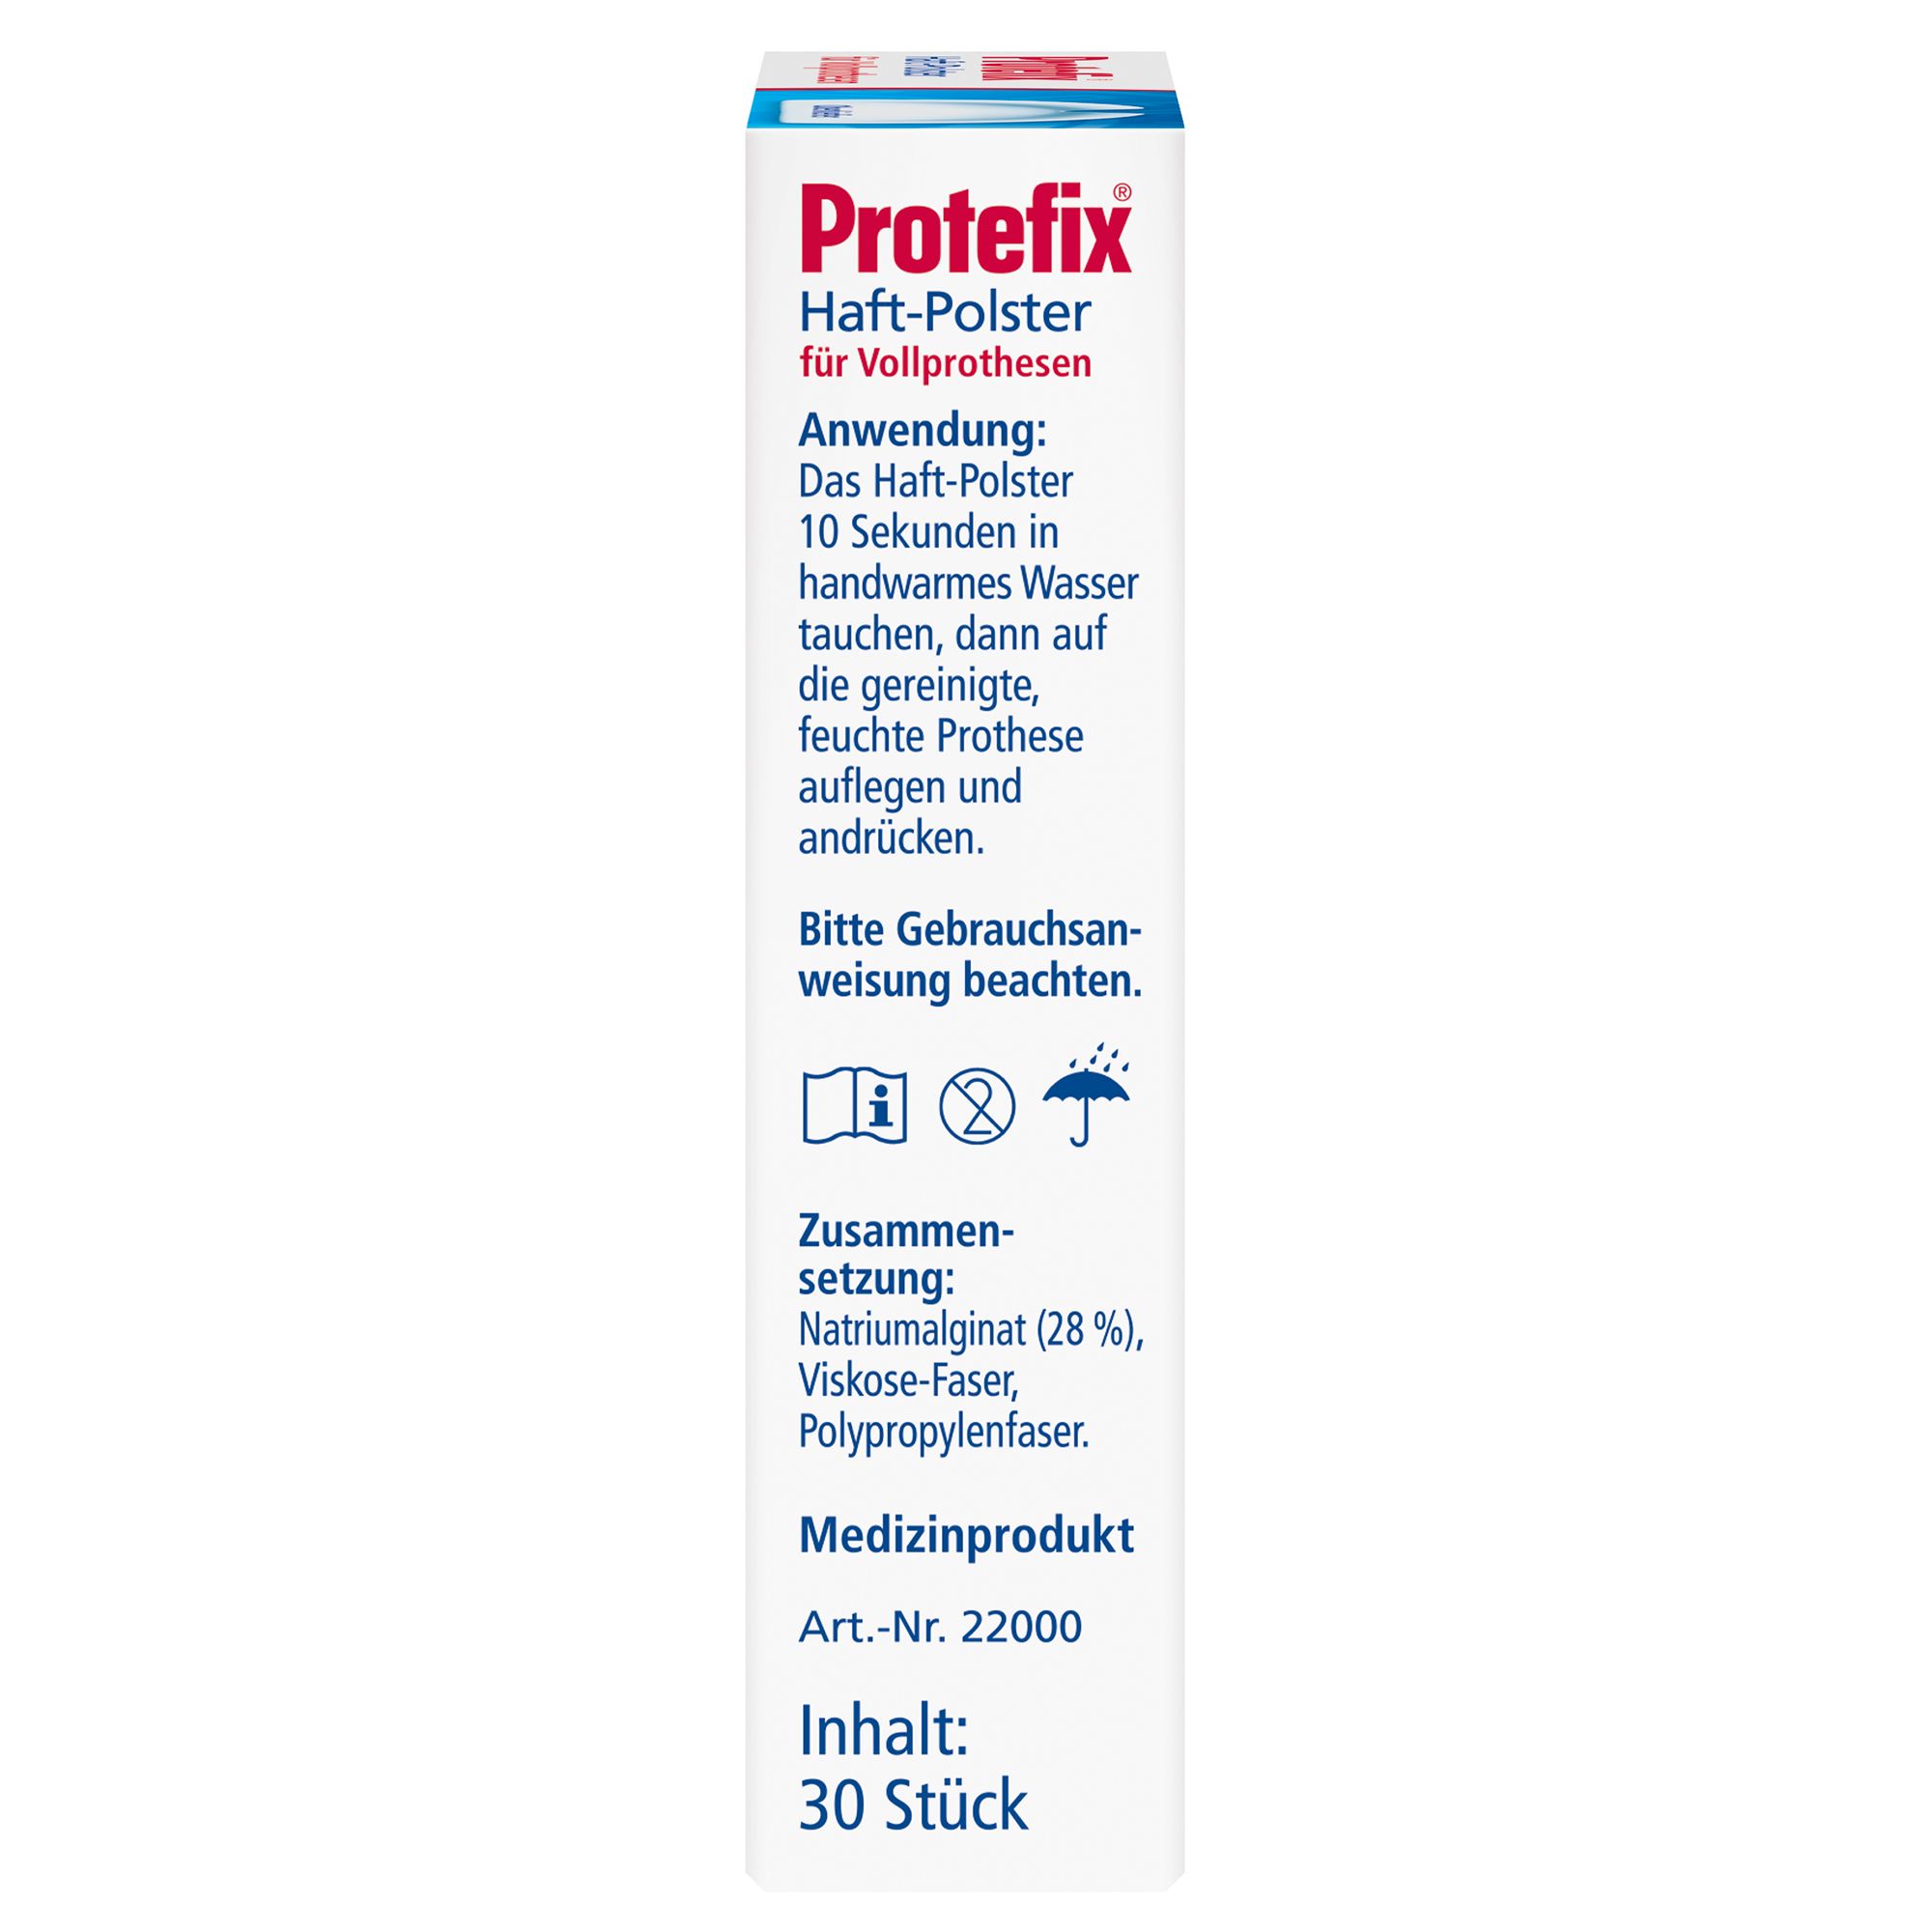 Protefix® Haft-Polster für Oberkieferzahnprothesen